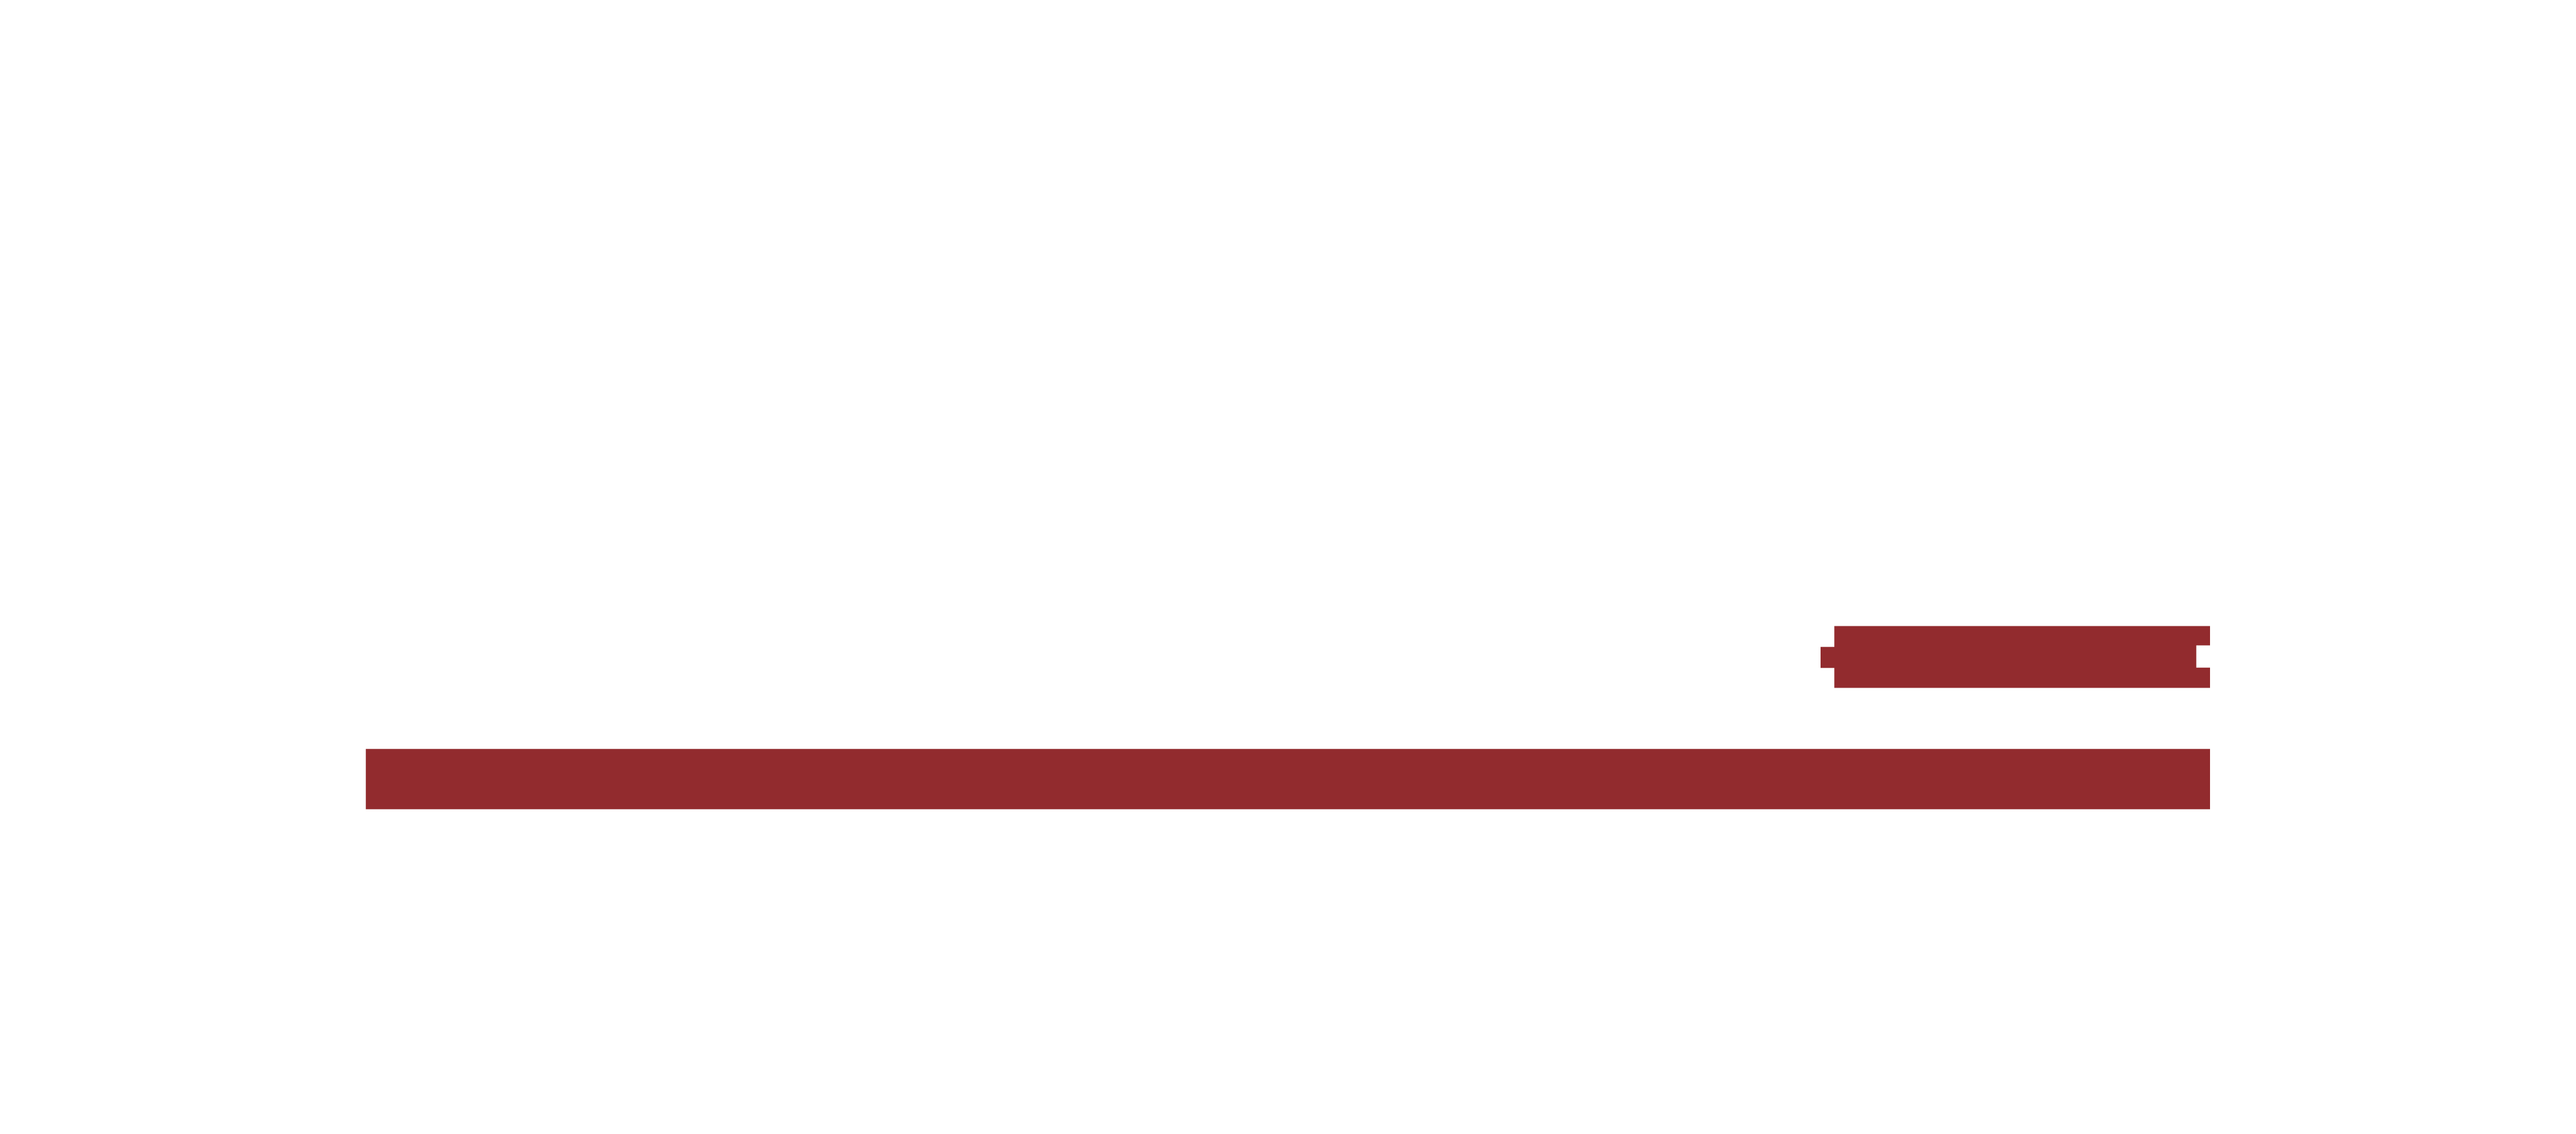 Lamett